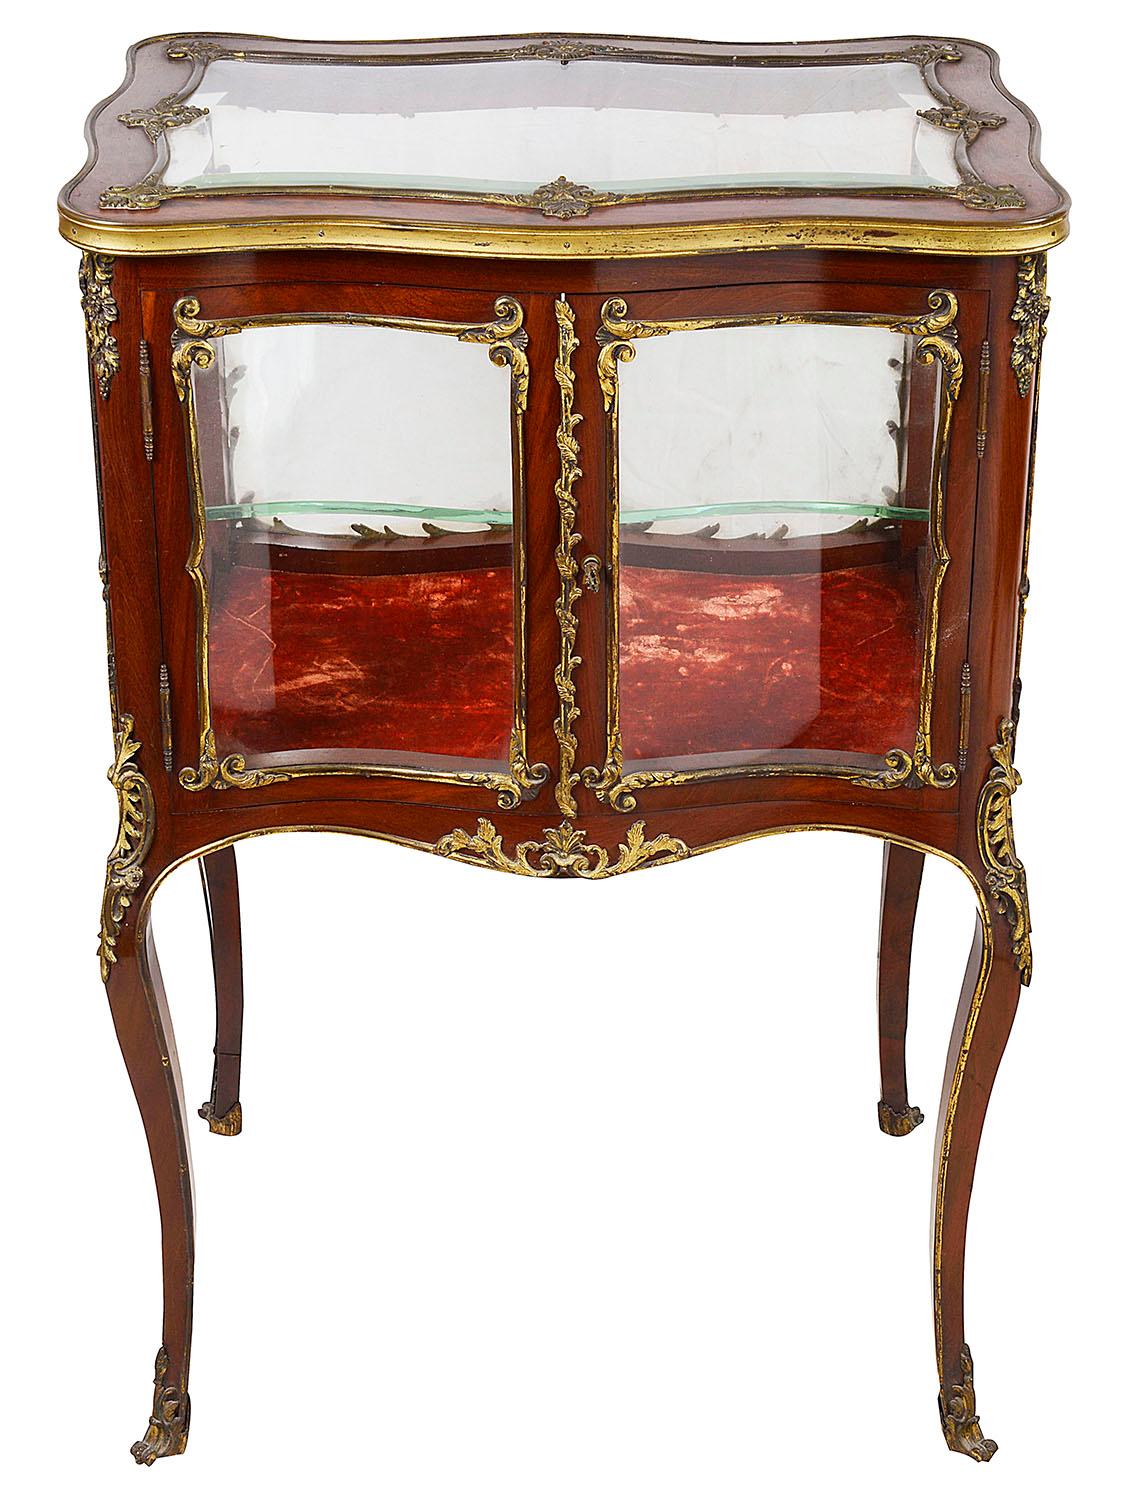 Un cabinet de bijouterie de bonne qualité en acajou français de la fin du 19ème siècle, avec des montures rococo de style Louis XVI en bronze doré, une seule porte s'ouvrant pour accéder à l'étagère en verre. Il repose sur d'élégants pieds cabriole